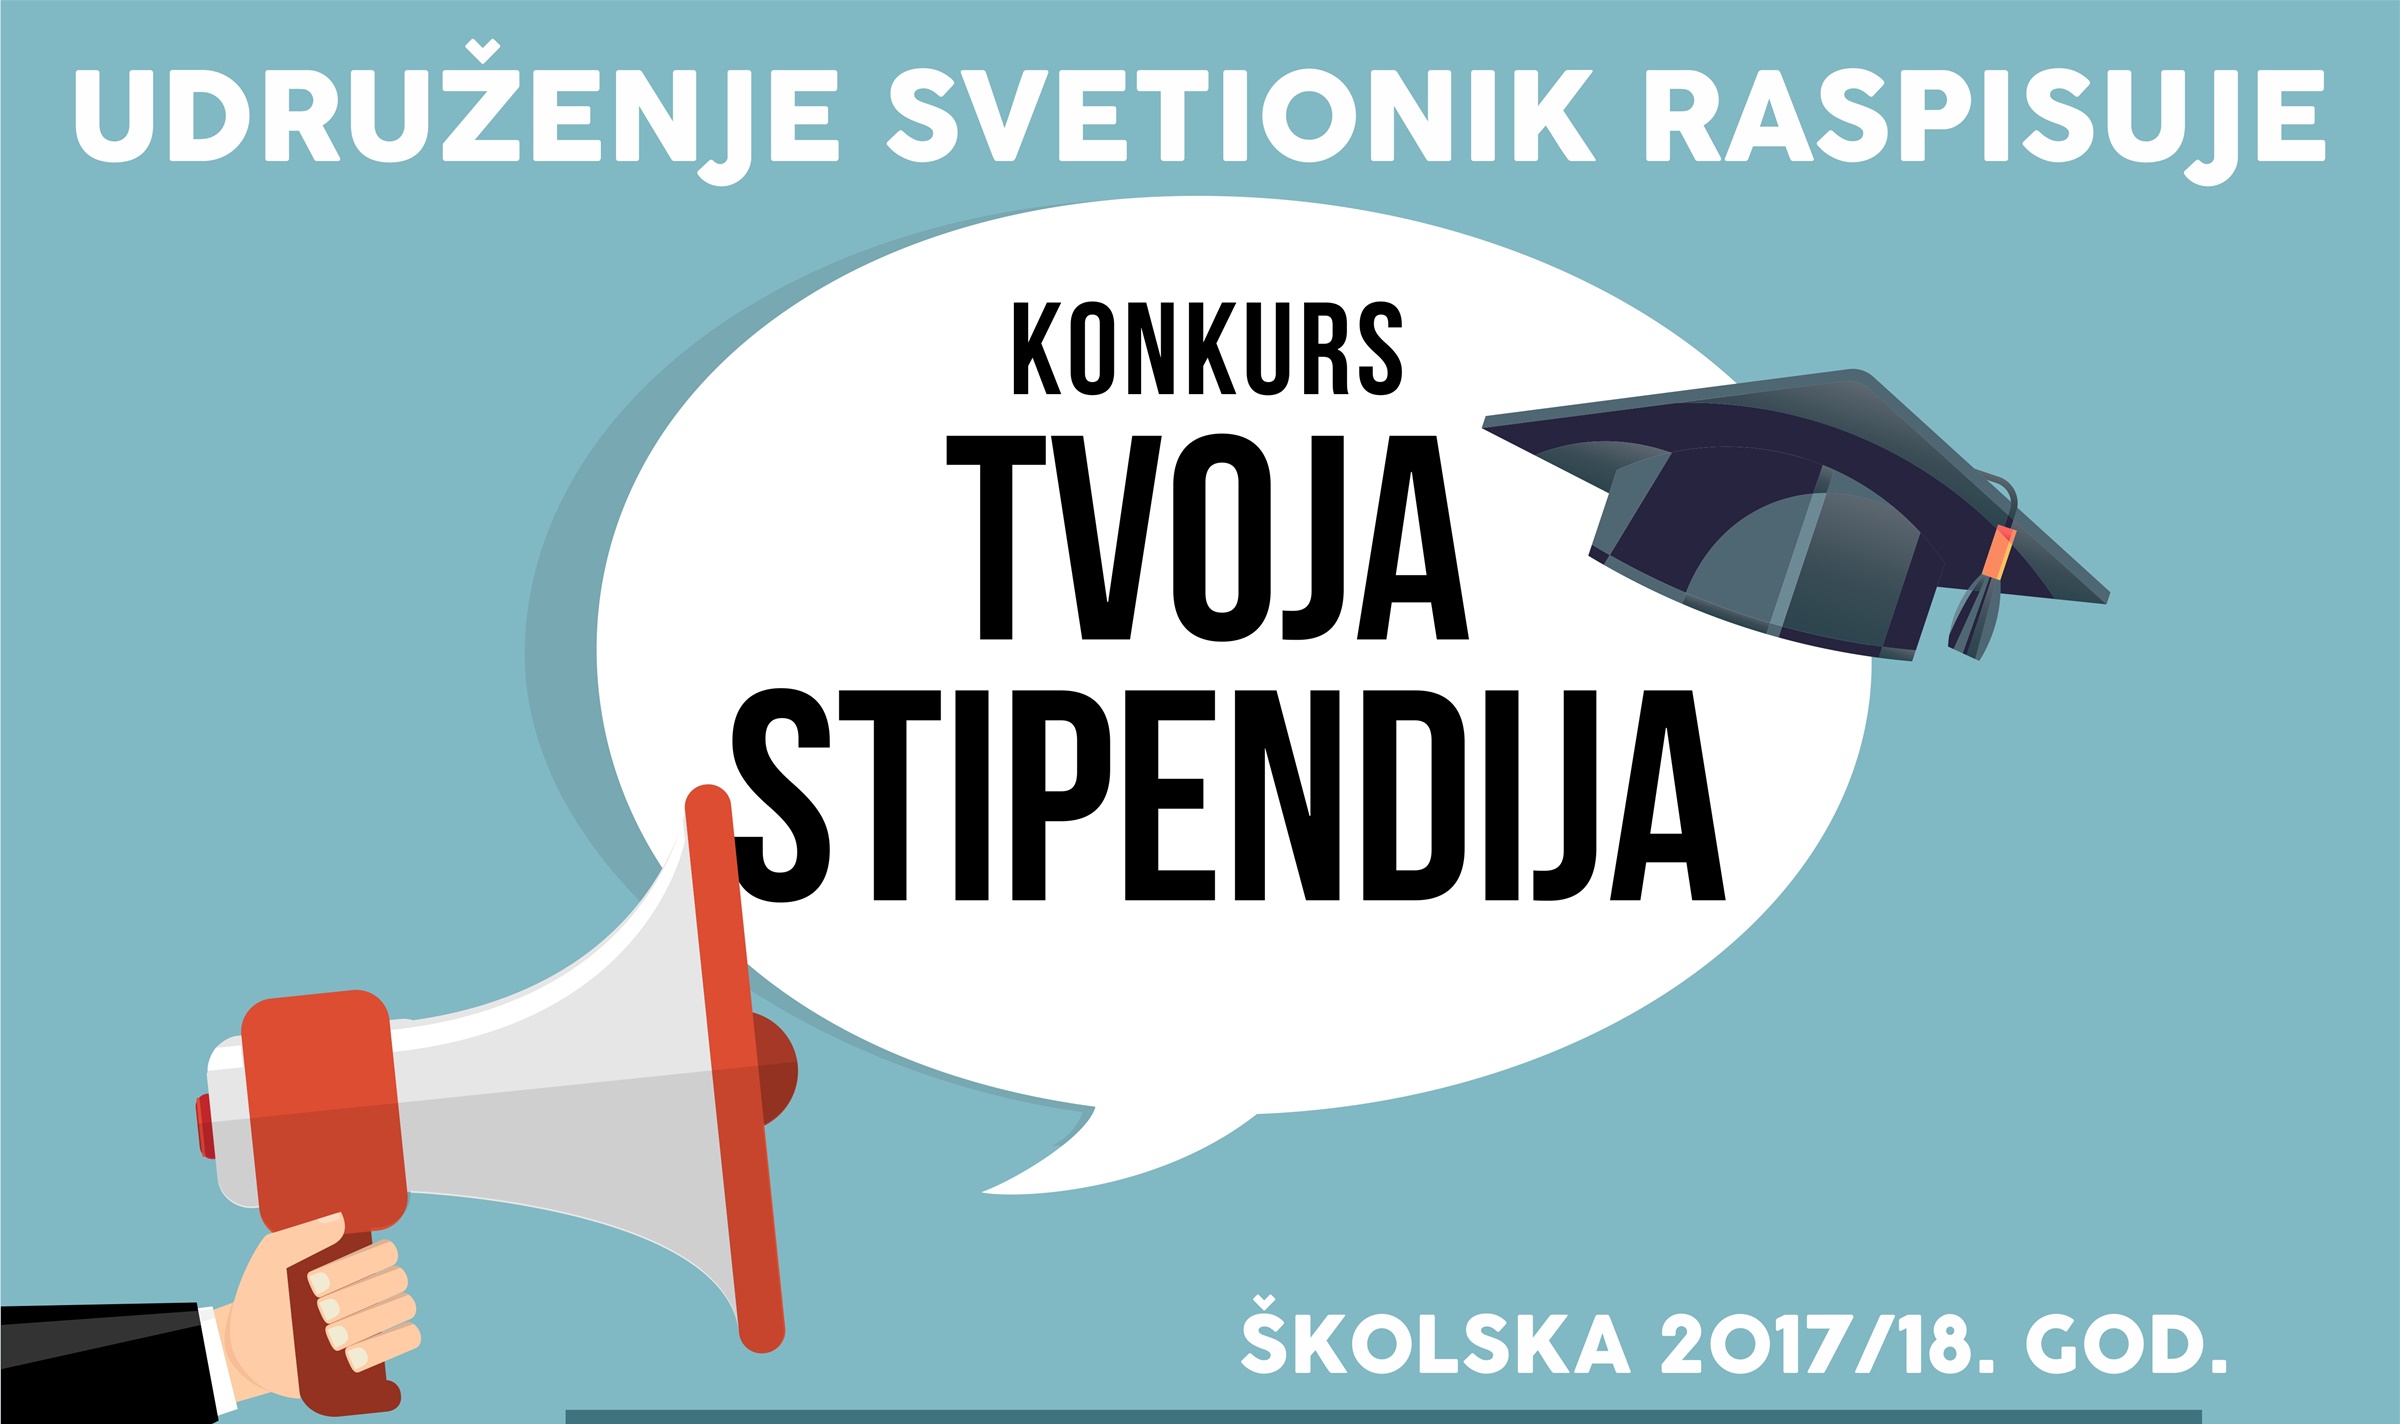 RASPISAN KONKURS “TVOJA STIPENDIJA” ZA 2017/18.